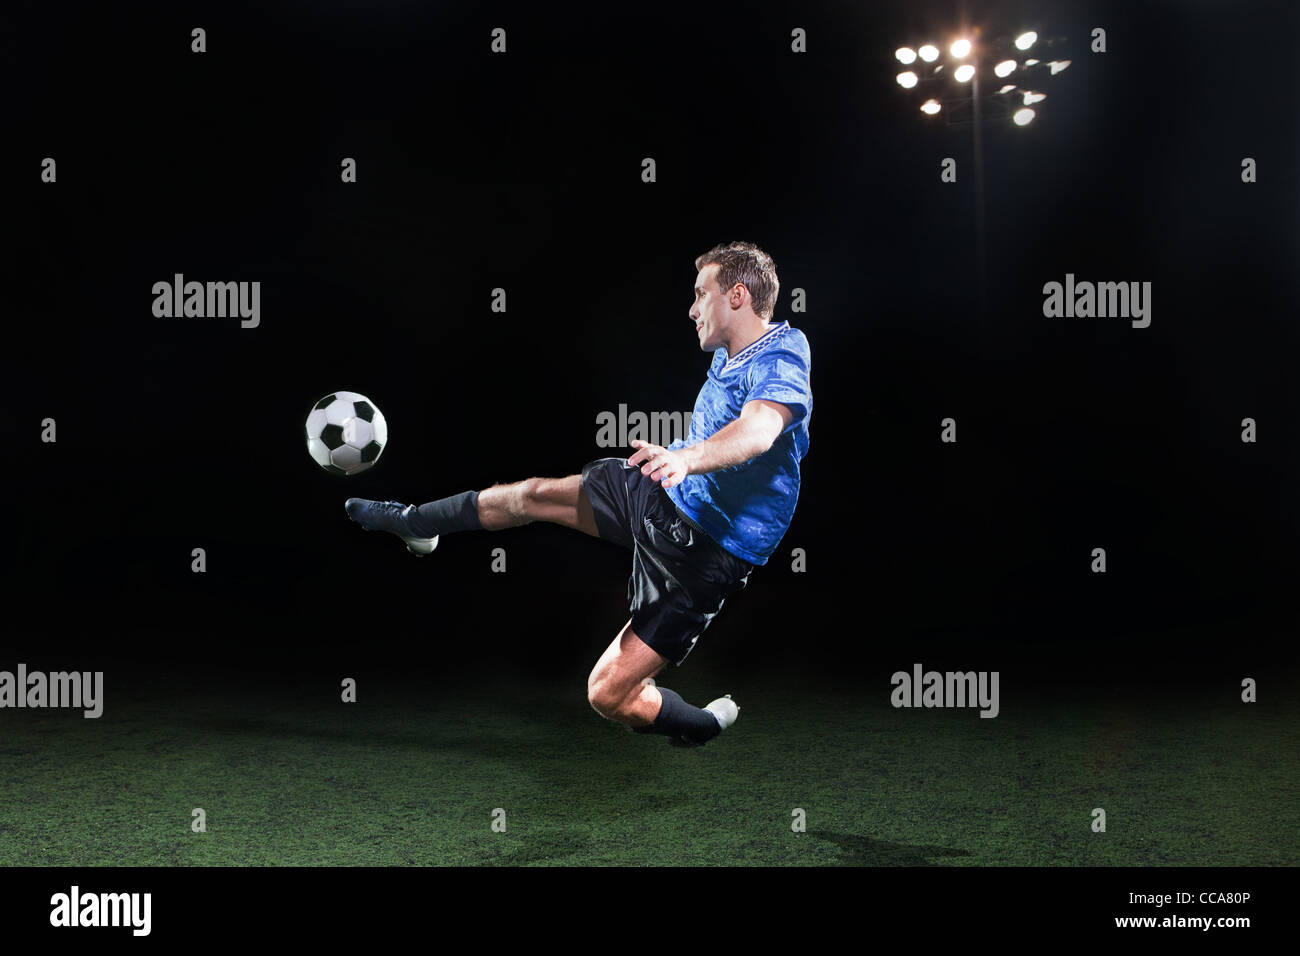 Jeune joueur de football sauter dans l'air pour kick ball Banque D'Images